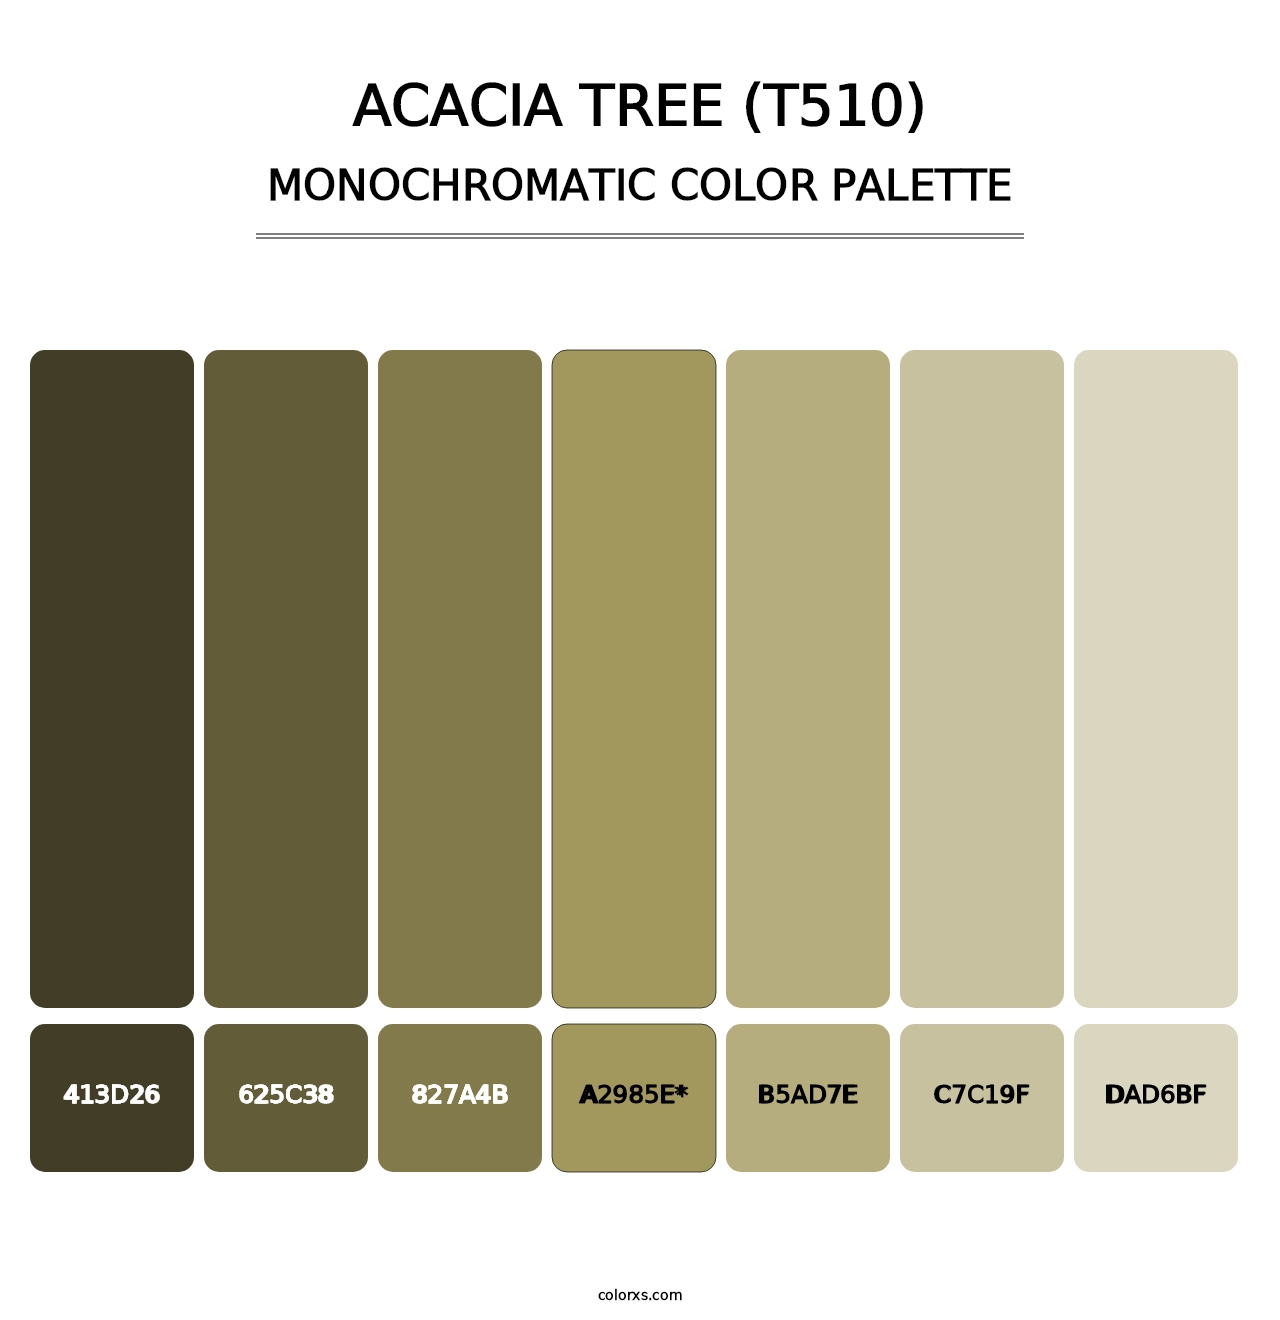 Acacia Tree (T510) - Monochromatic Color Palette